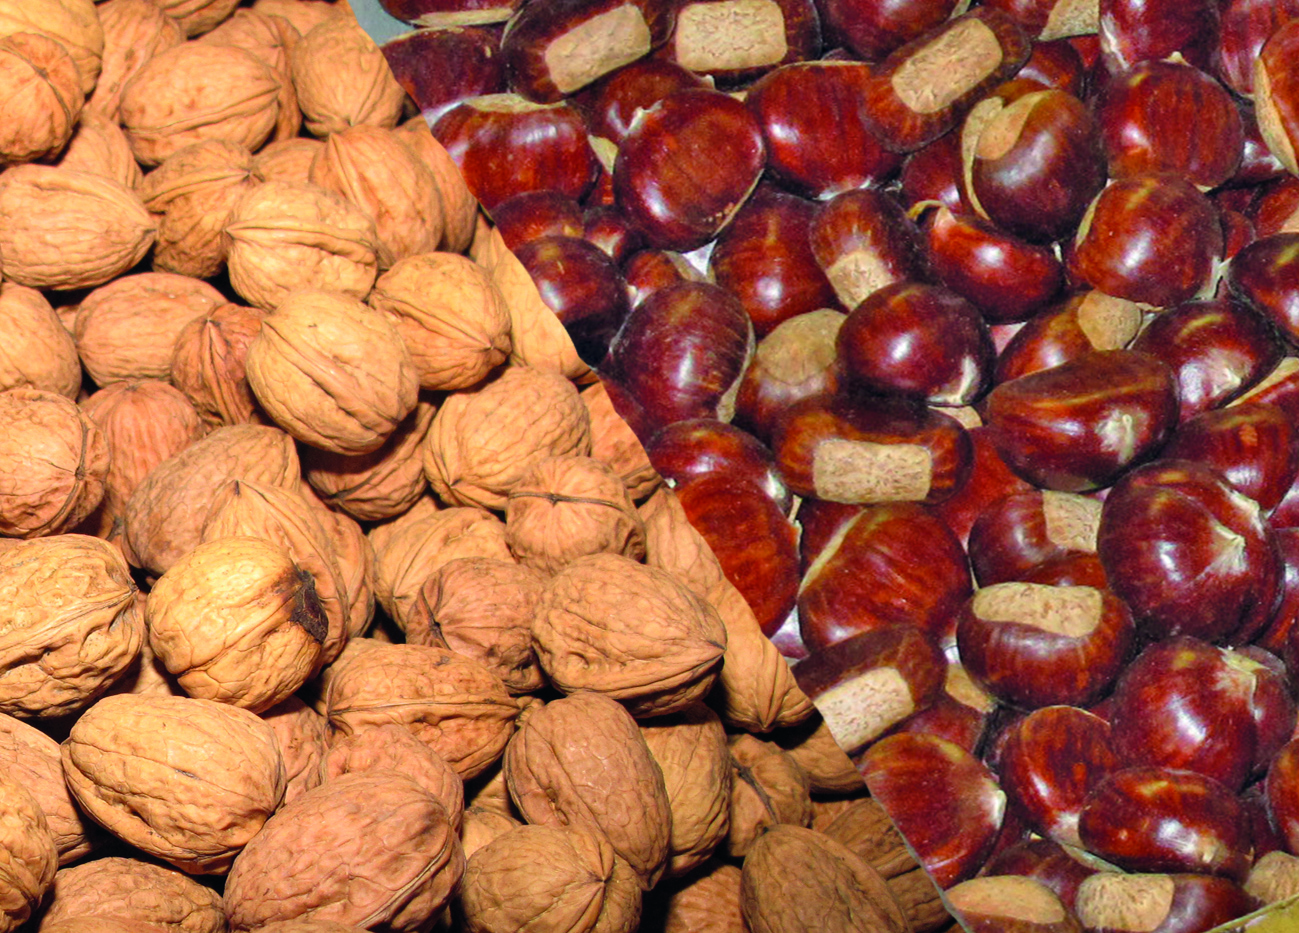 Production régionale de fruits bio : noix et châtaignes en tête 